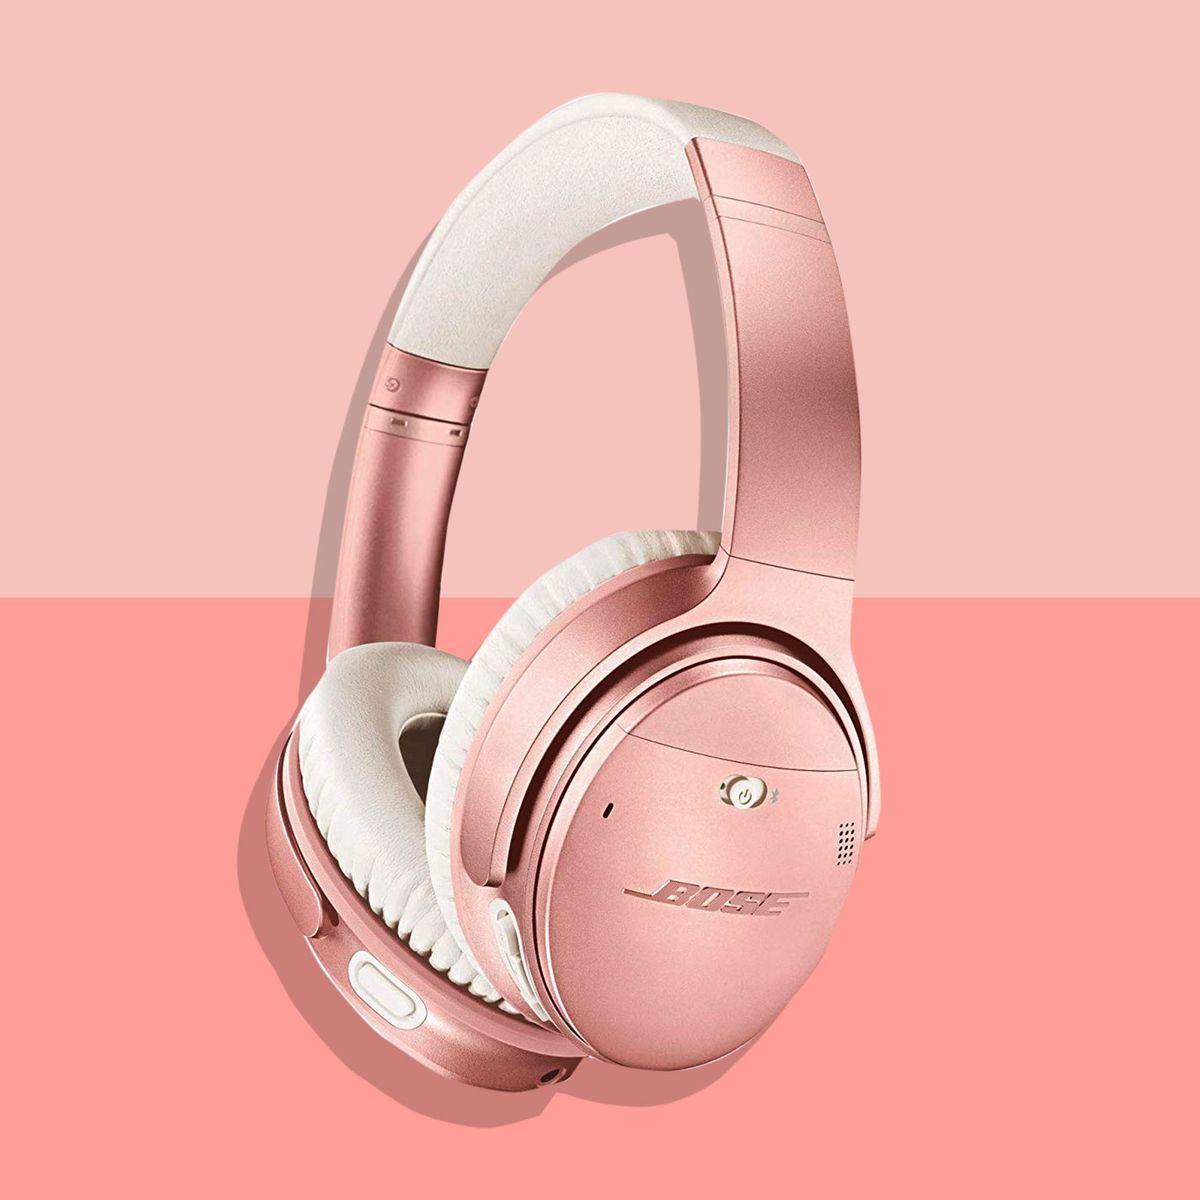 Bose QuietComfort 35 Headphones Amazon Sale 2020 The